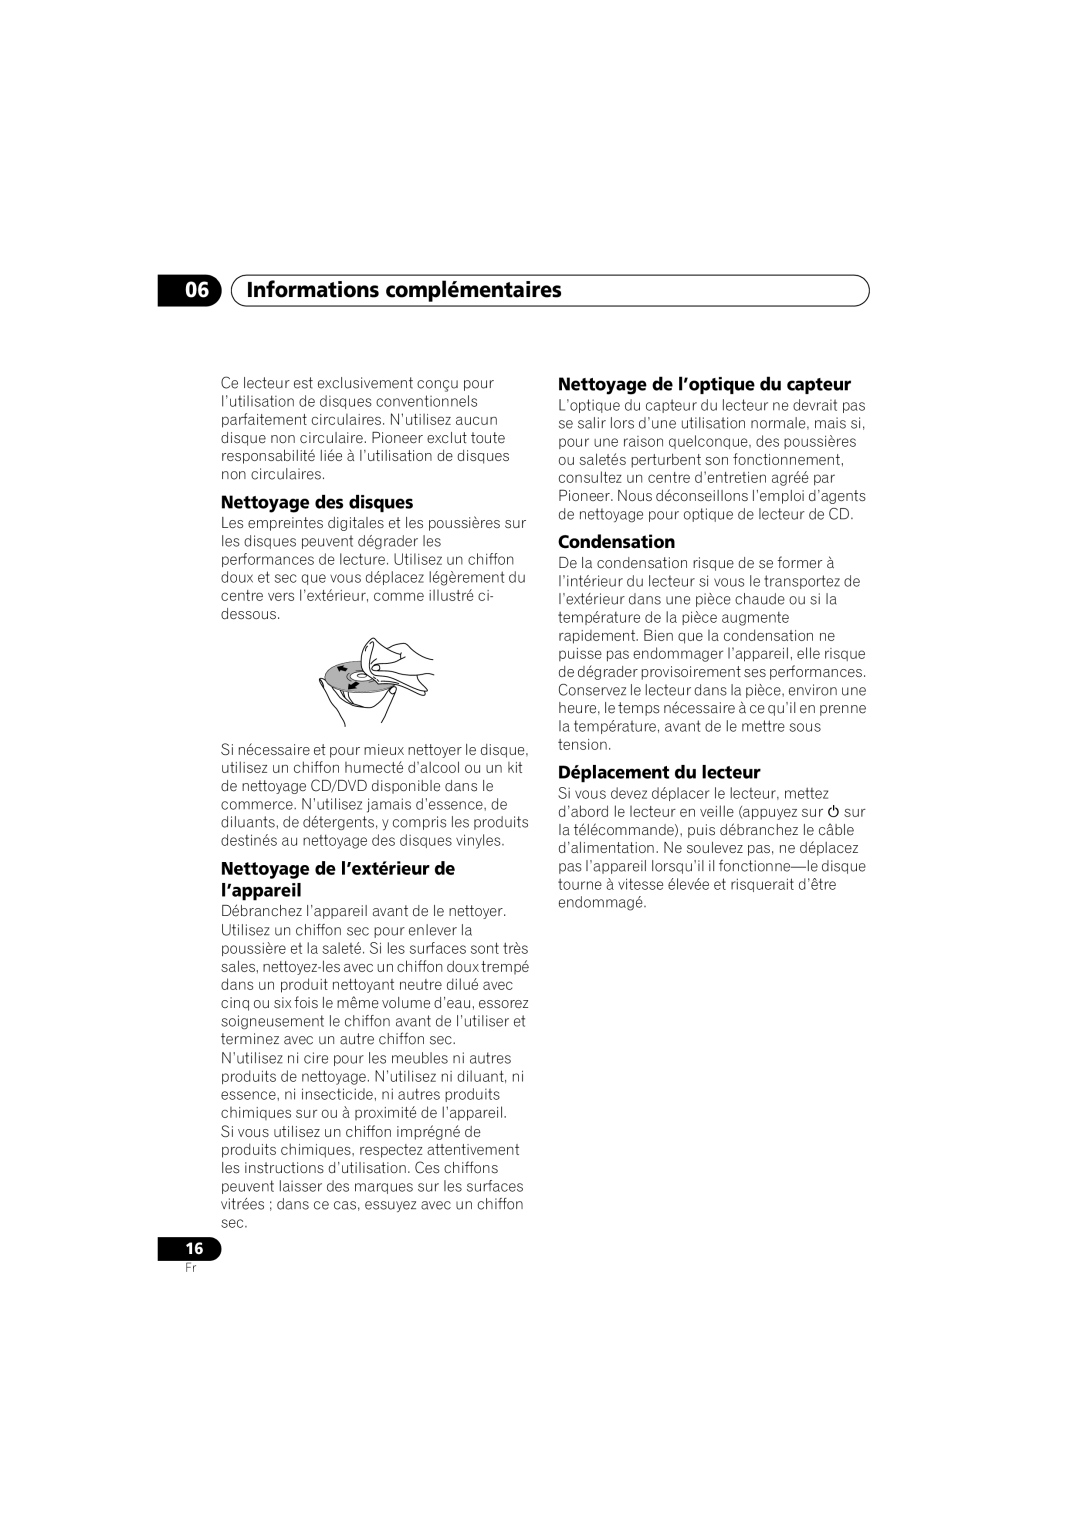 Pioneer PD-D6-J manual 06Informations complémentaires, Nettoyage des disques, Nettoyage de l’extérieur de l’appareil 